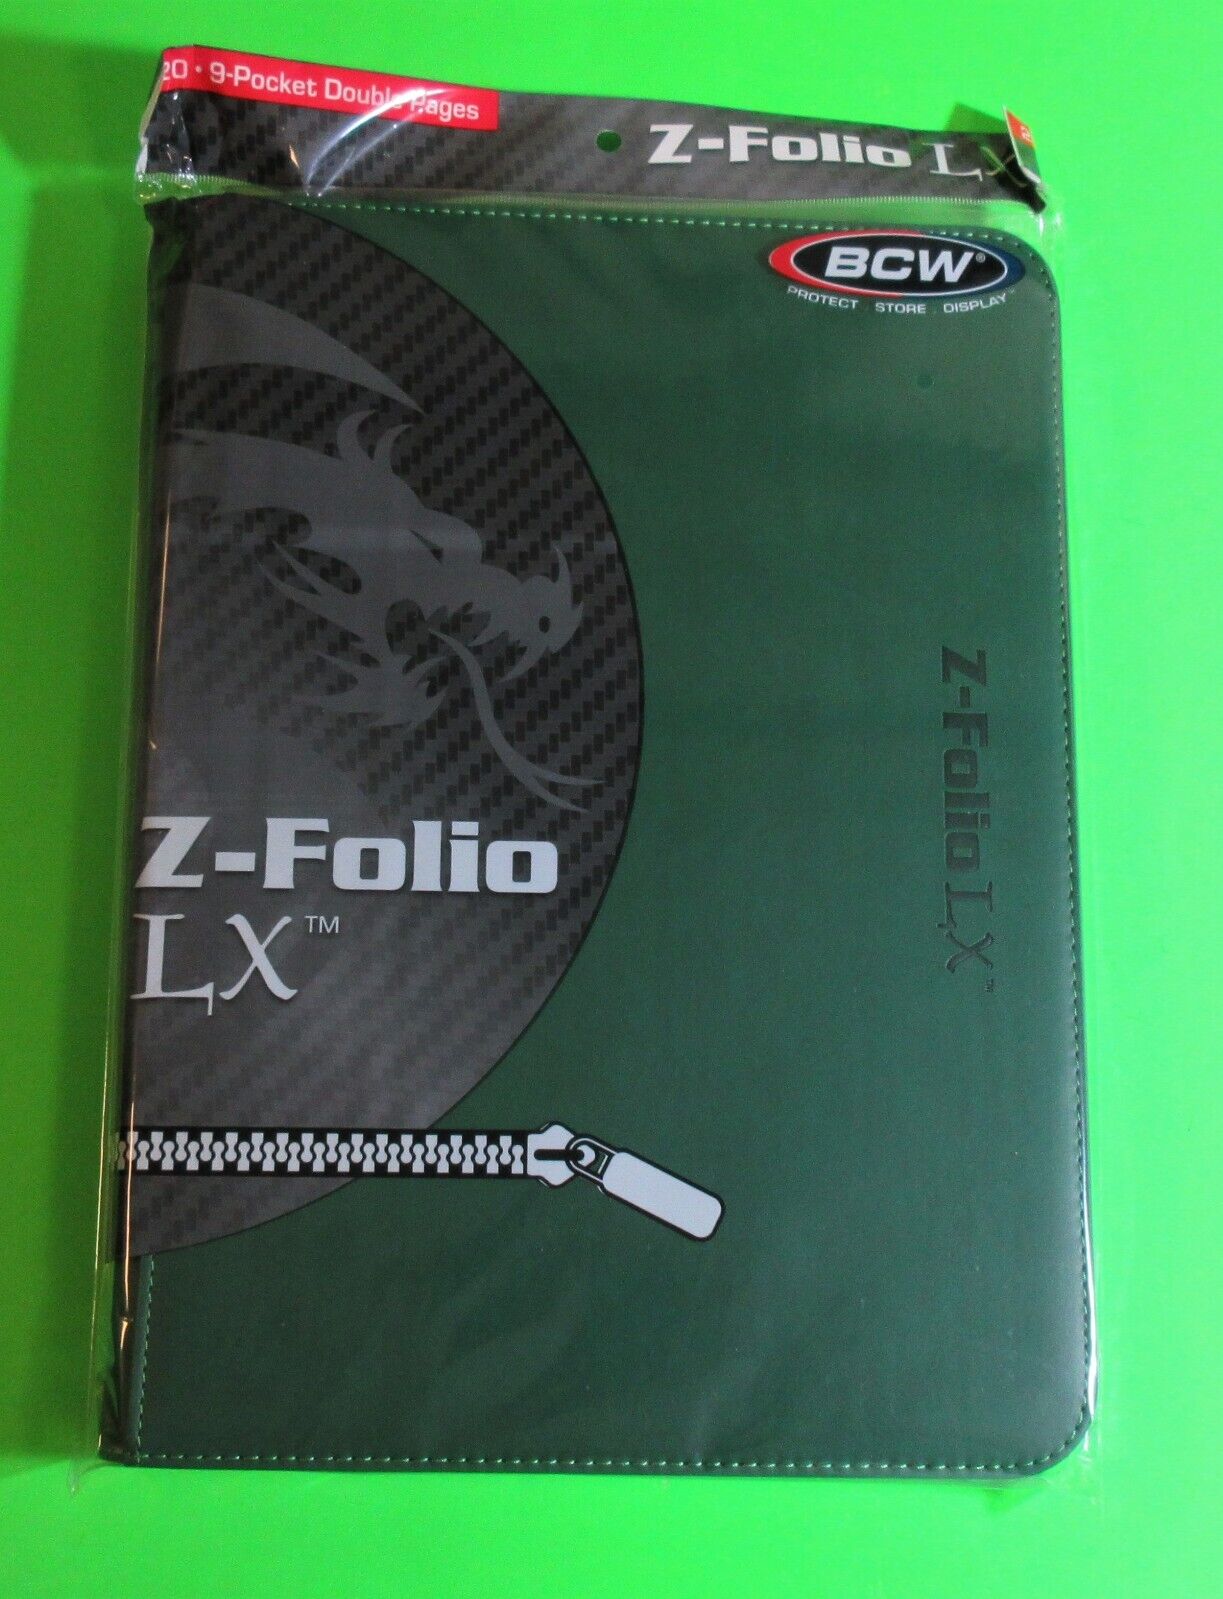 BCW GAMING Z-FOLIO 9-POCKET LX ALBUM - GREEN, HOLDS 360 CARDS, ZIPPER CLOSURE